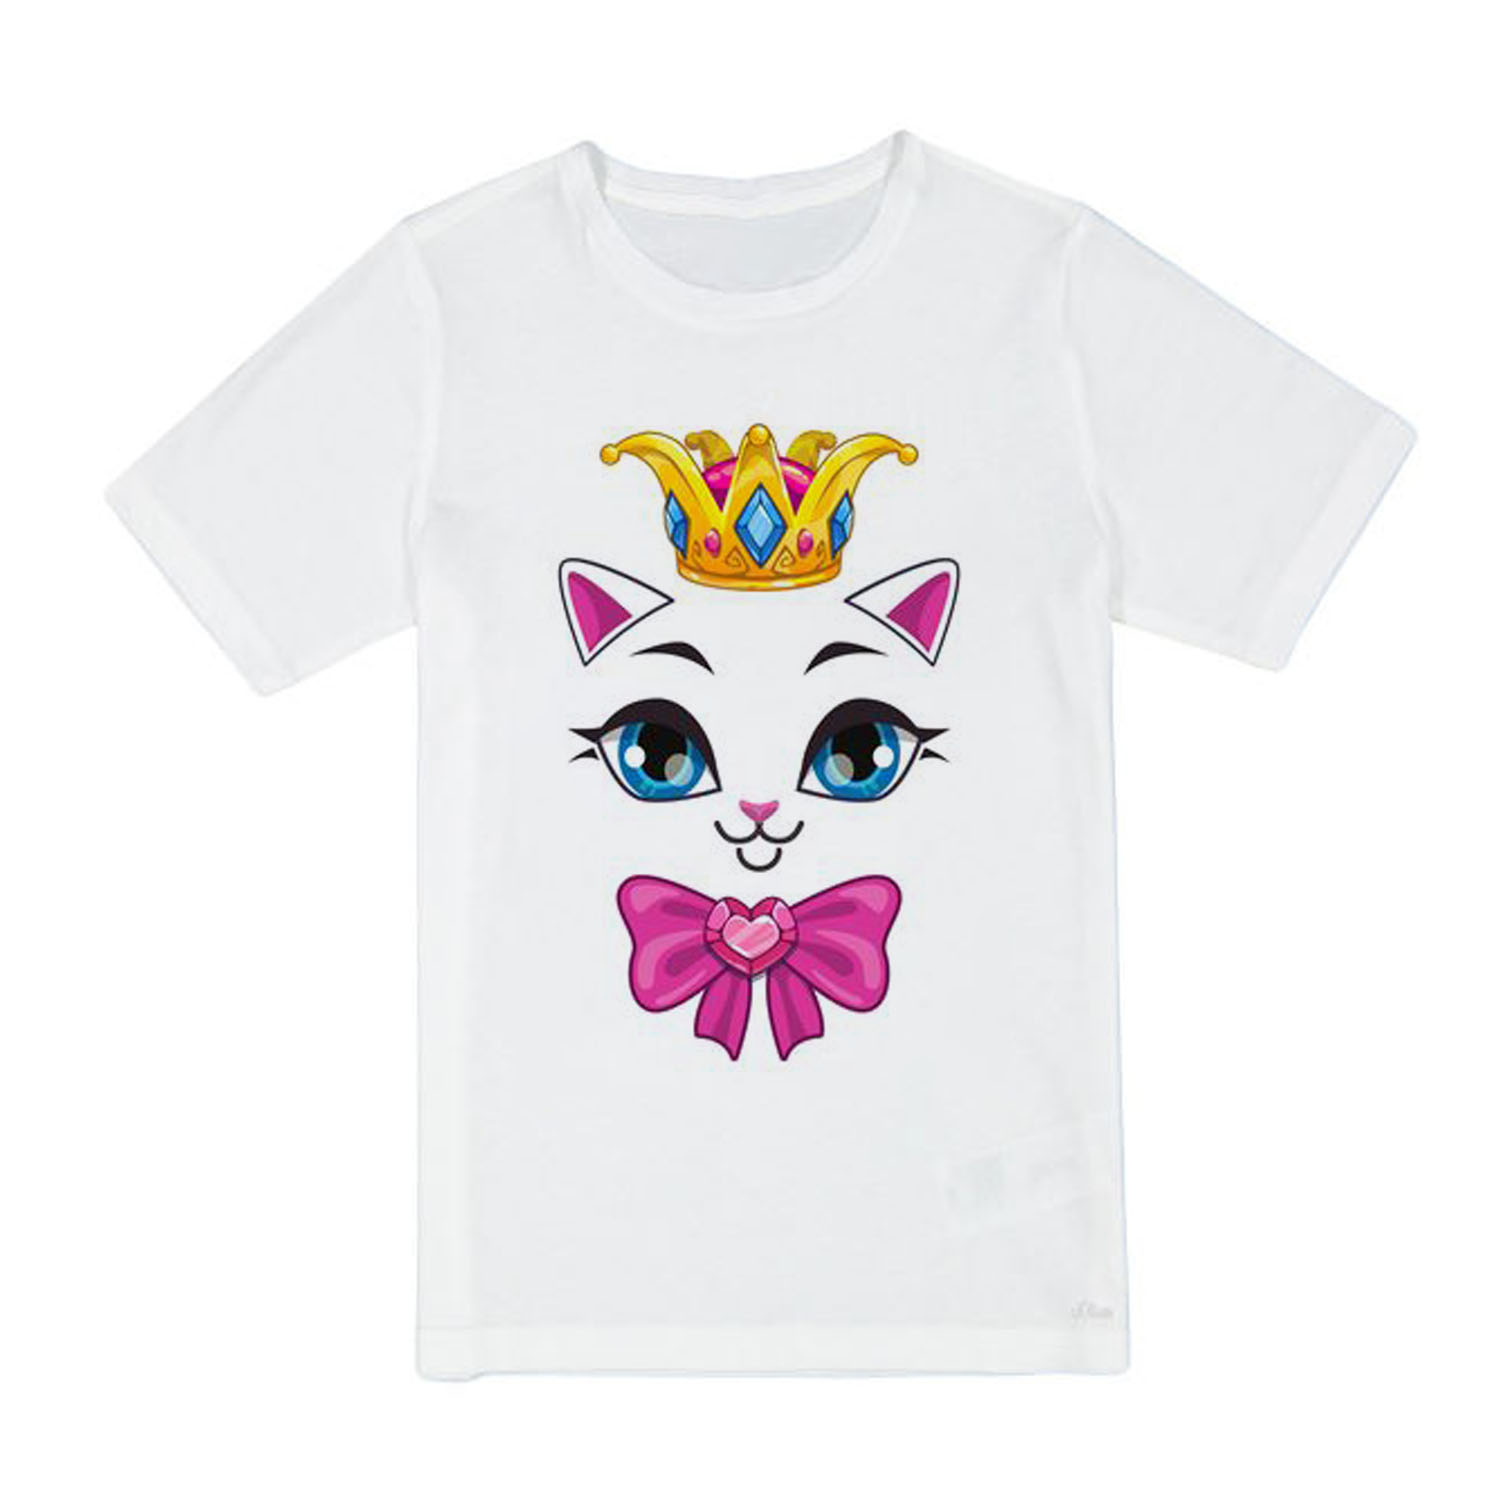 تی شرت آستین کوتاه دخترانه مدل cute cat کد s BA59 رنگ سفید